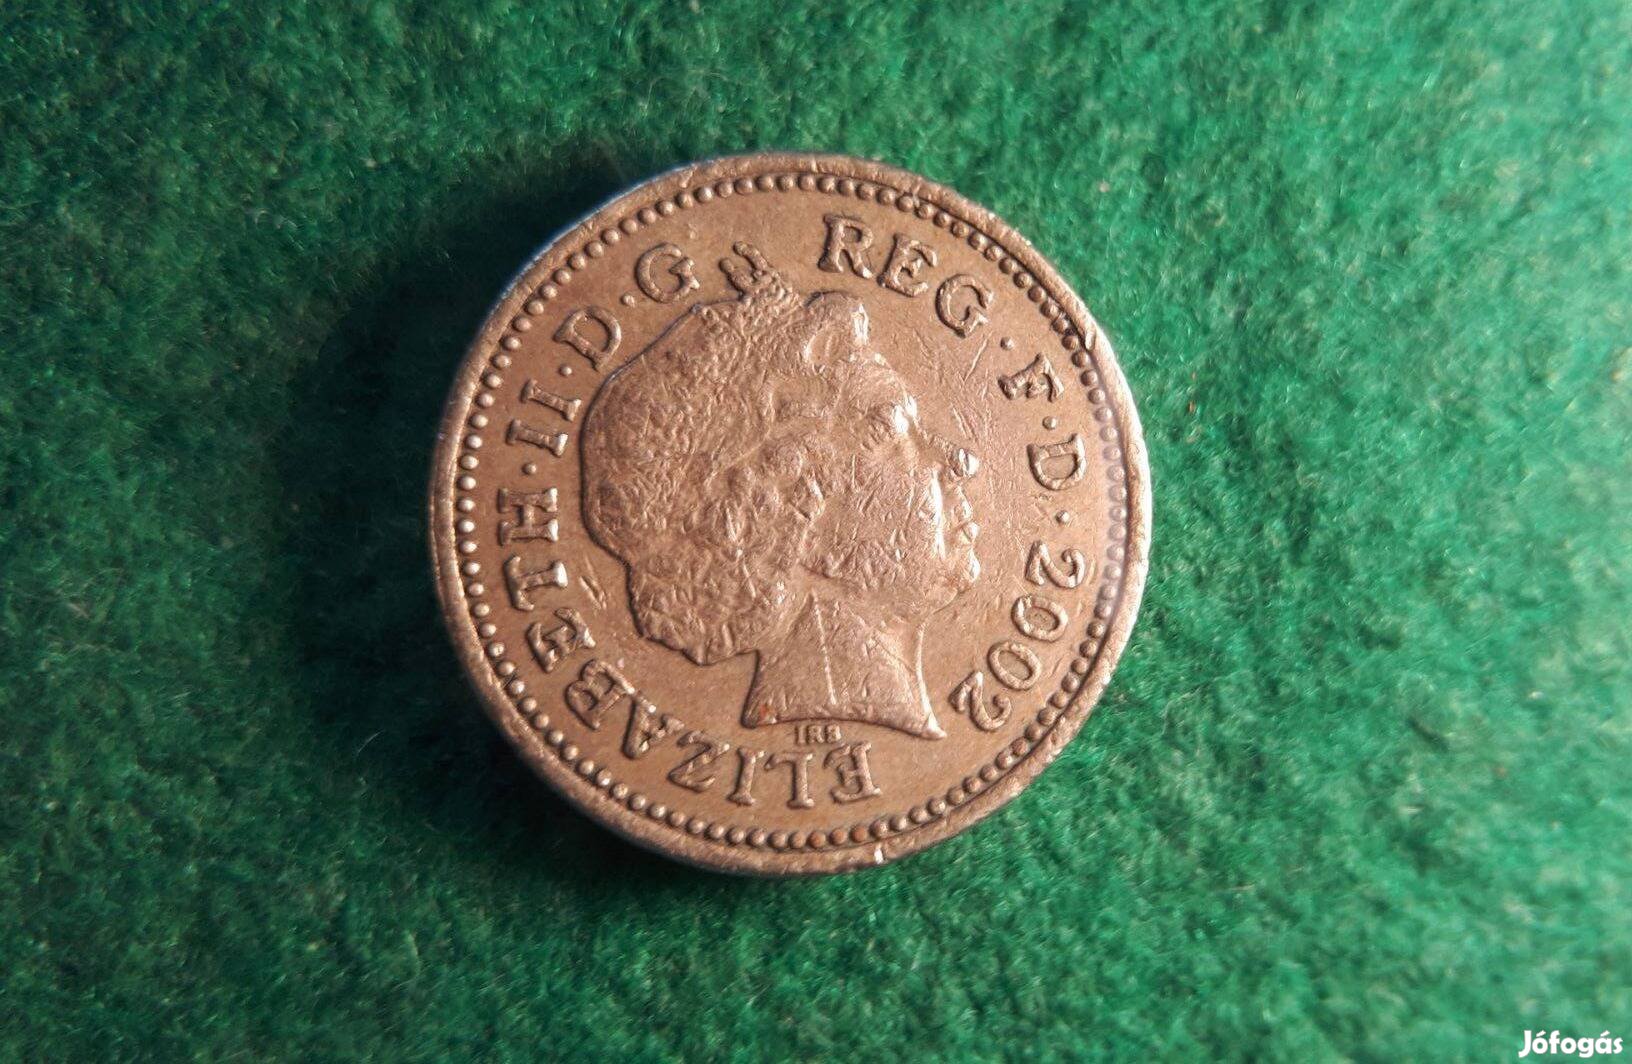 Angol ONE Pound 2002